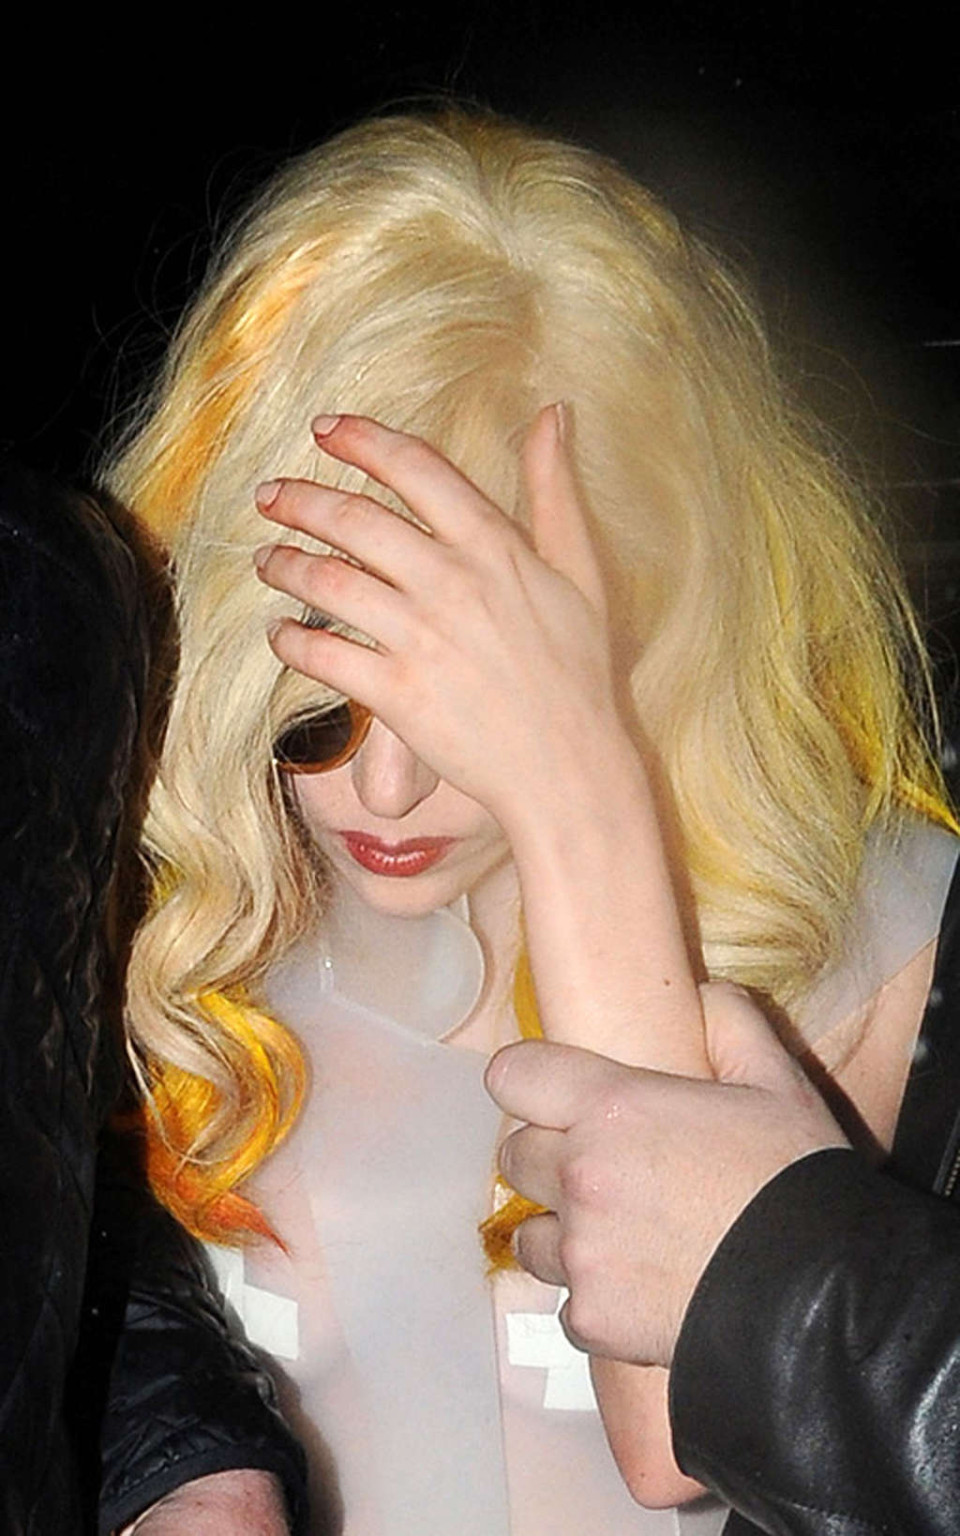 Lady Gaga mostrando sus tetas y su tanga en un vestido transparente
 #75358197